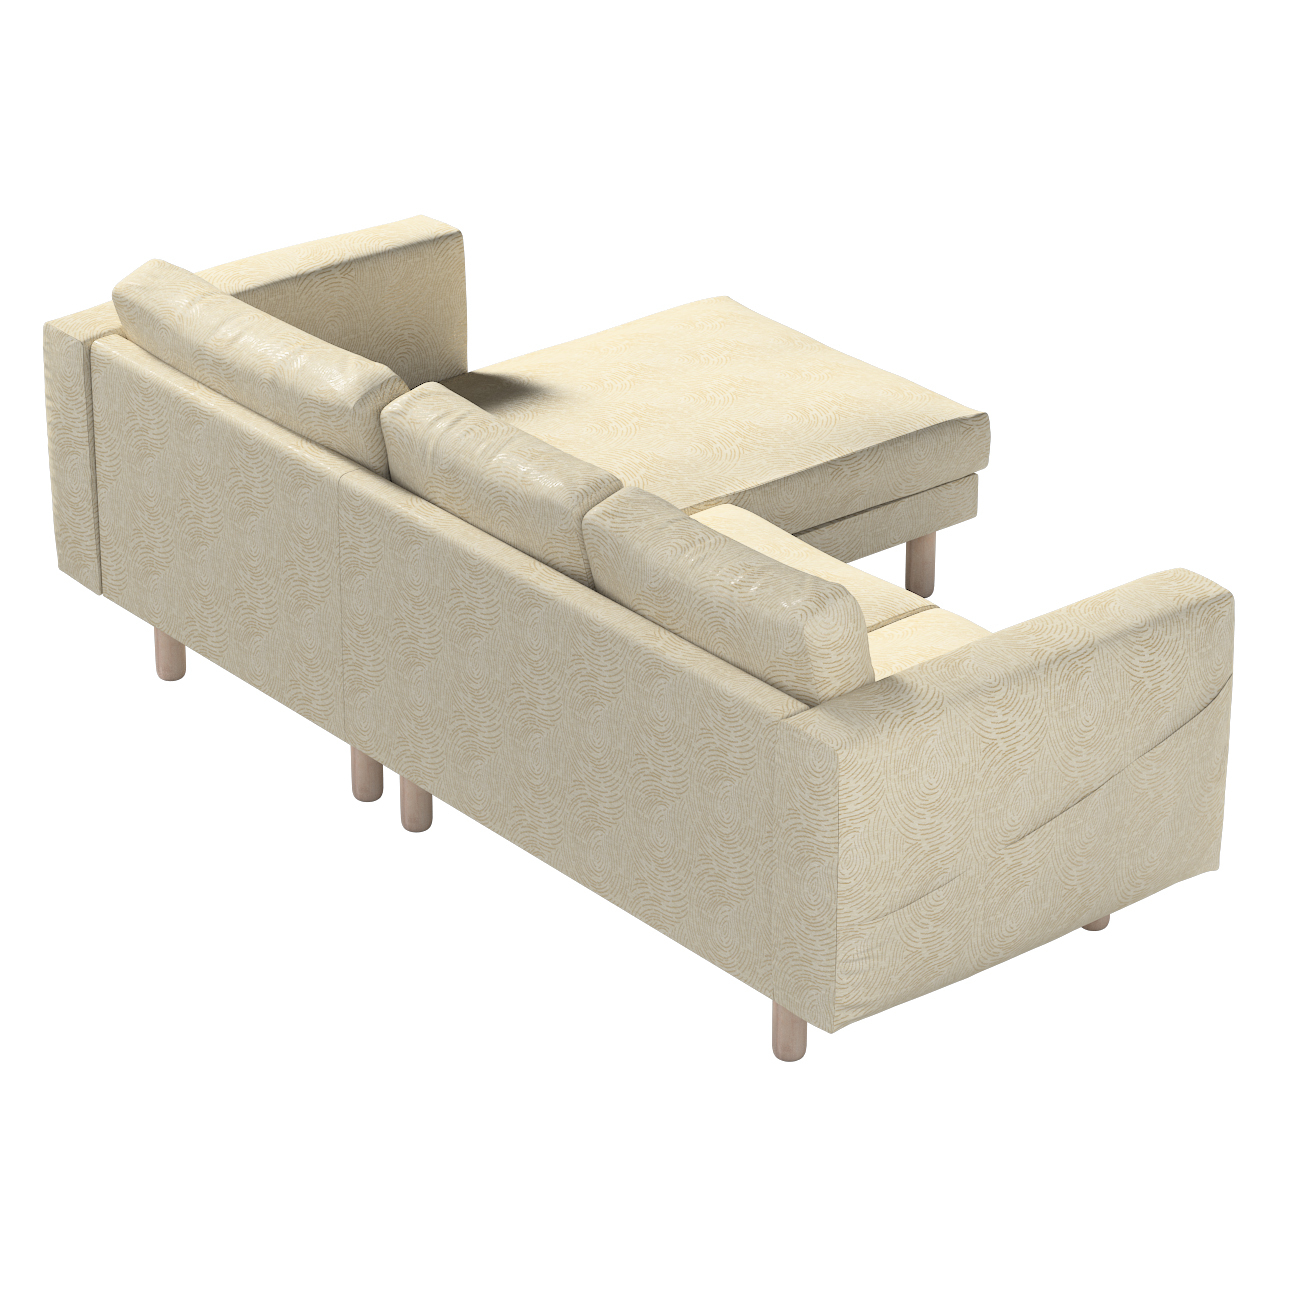 Bezug für Norsborg 3-Sitzer Sofa mit Recamiere, beige-golden, Norsborg Bezu günstig online kaufen